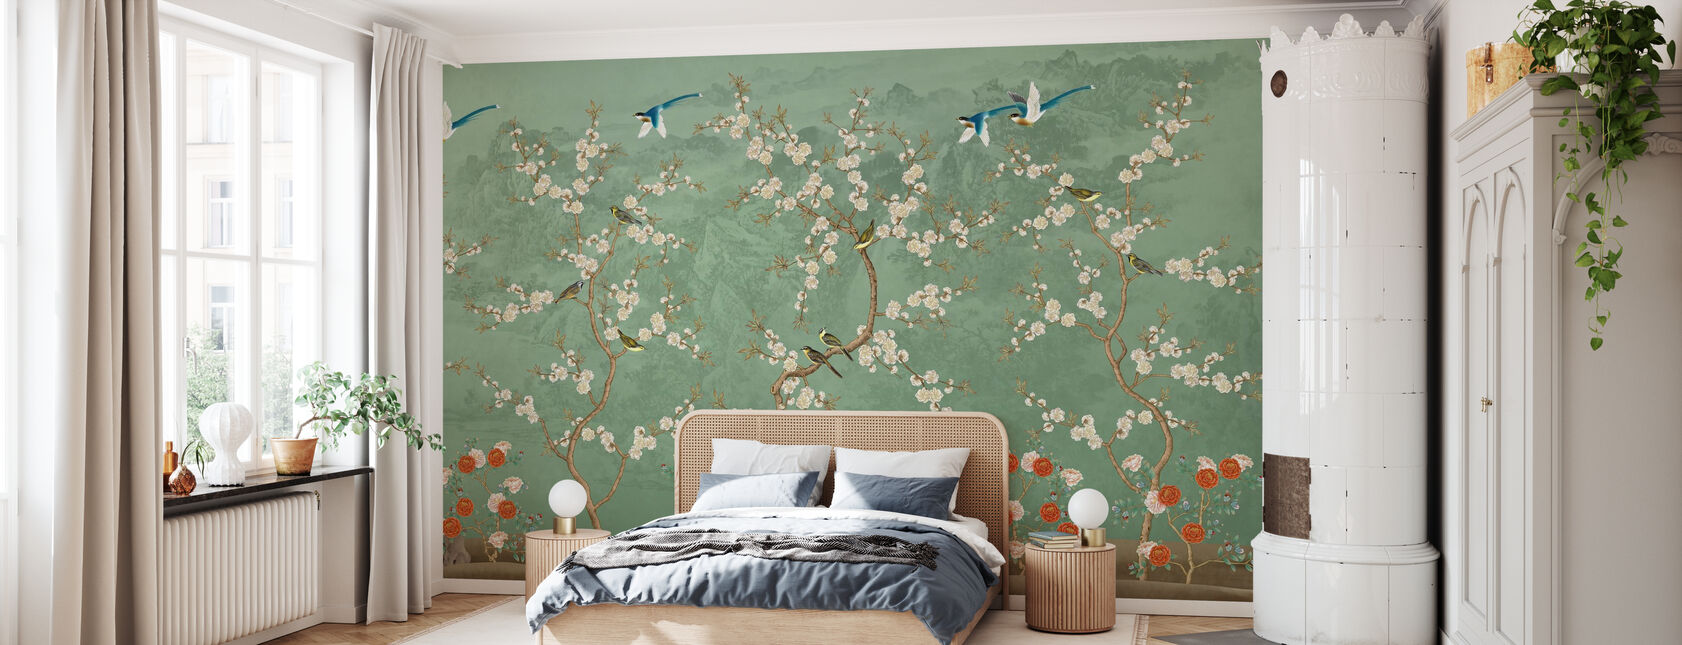 Chinoiserie Garden - Emerald - Wallpaper - Bedroom